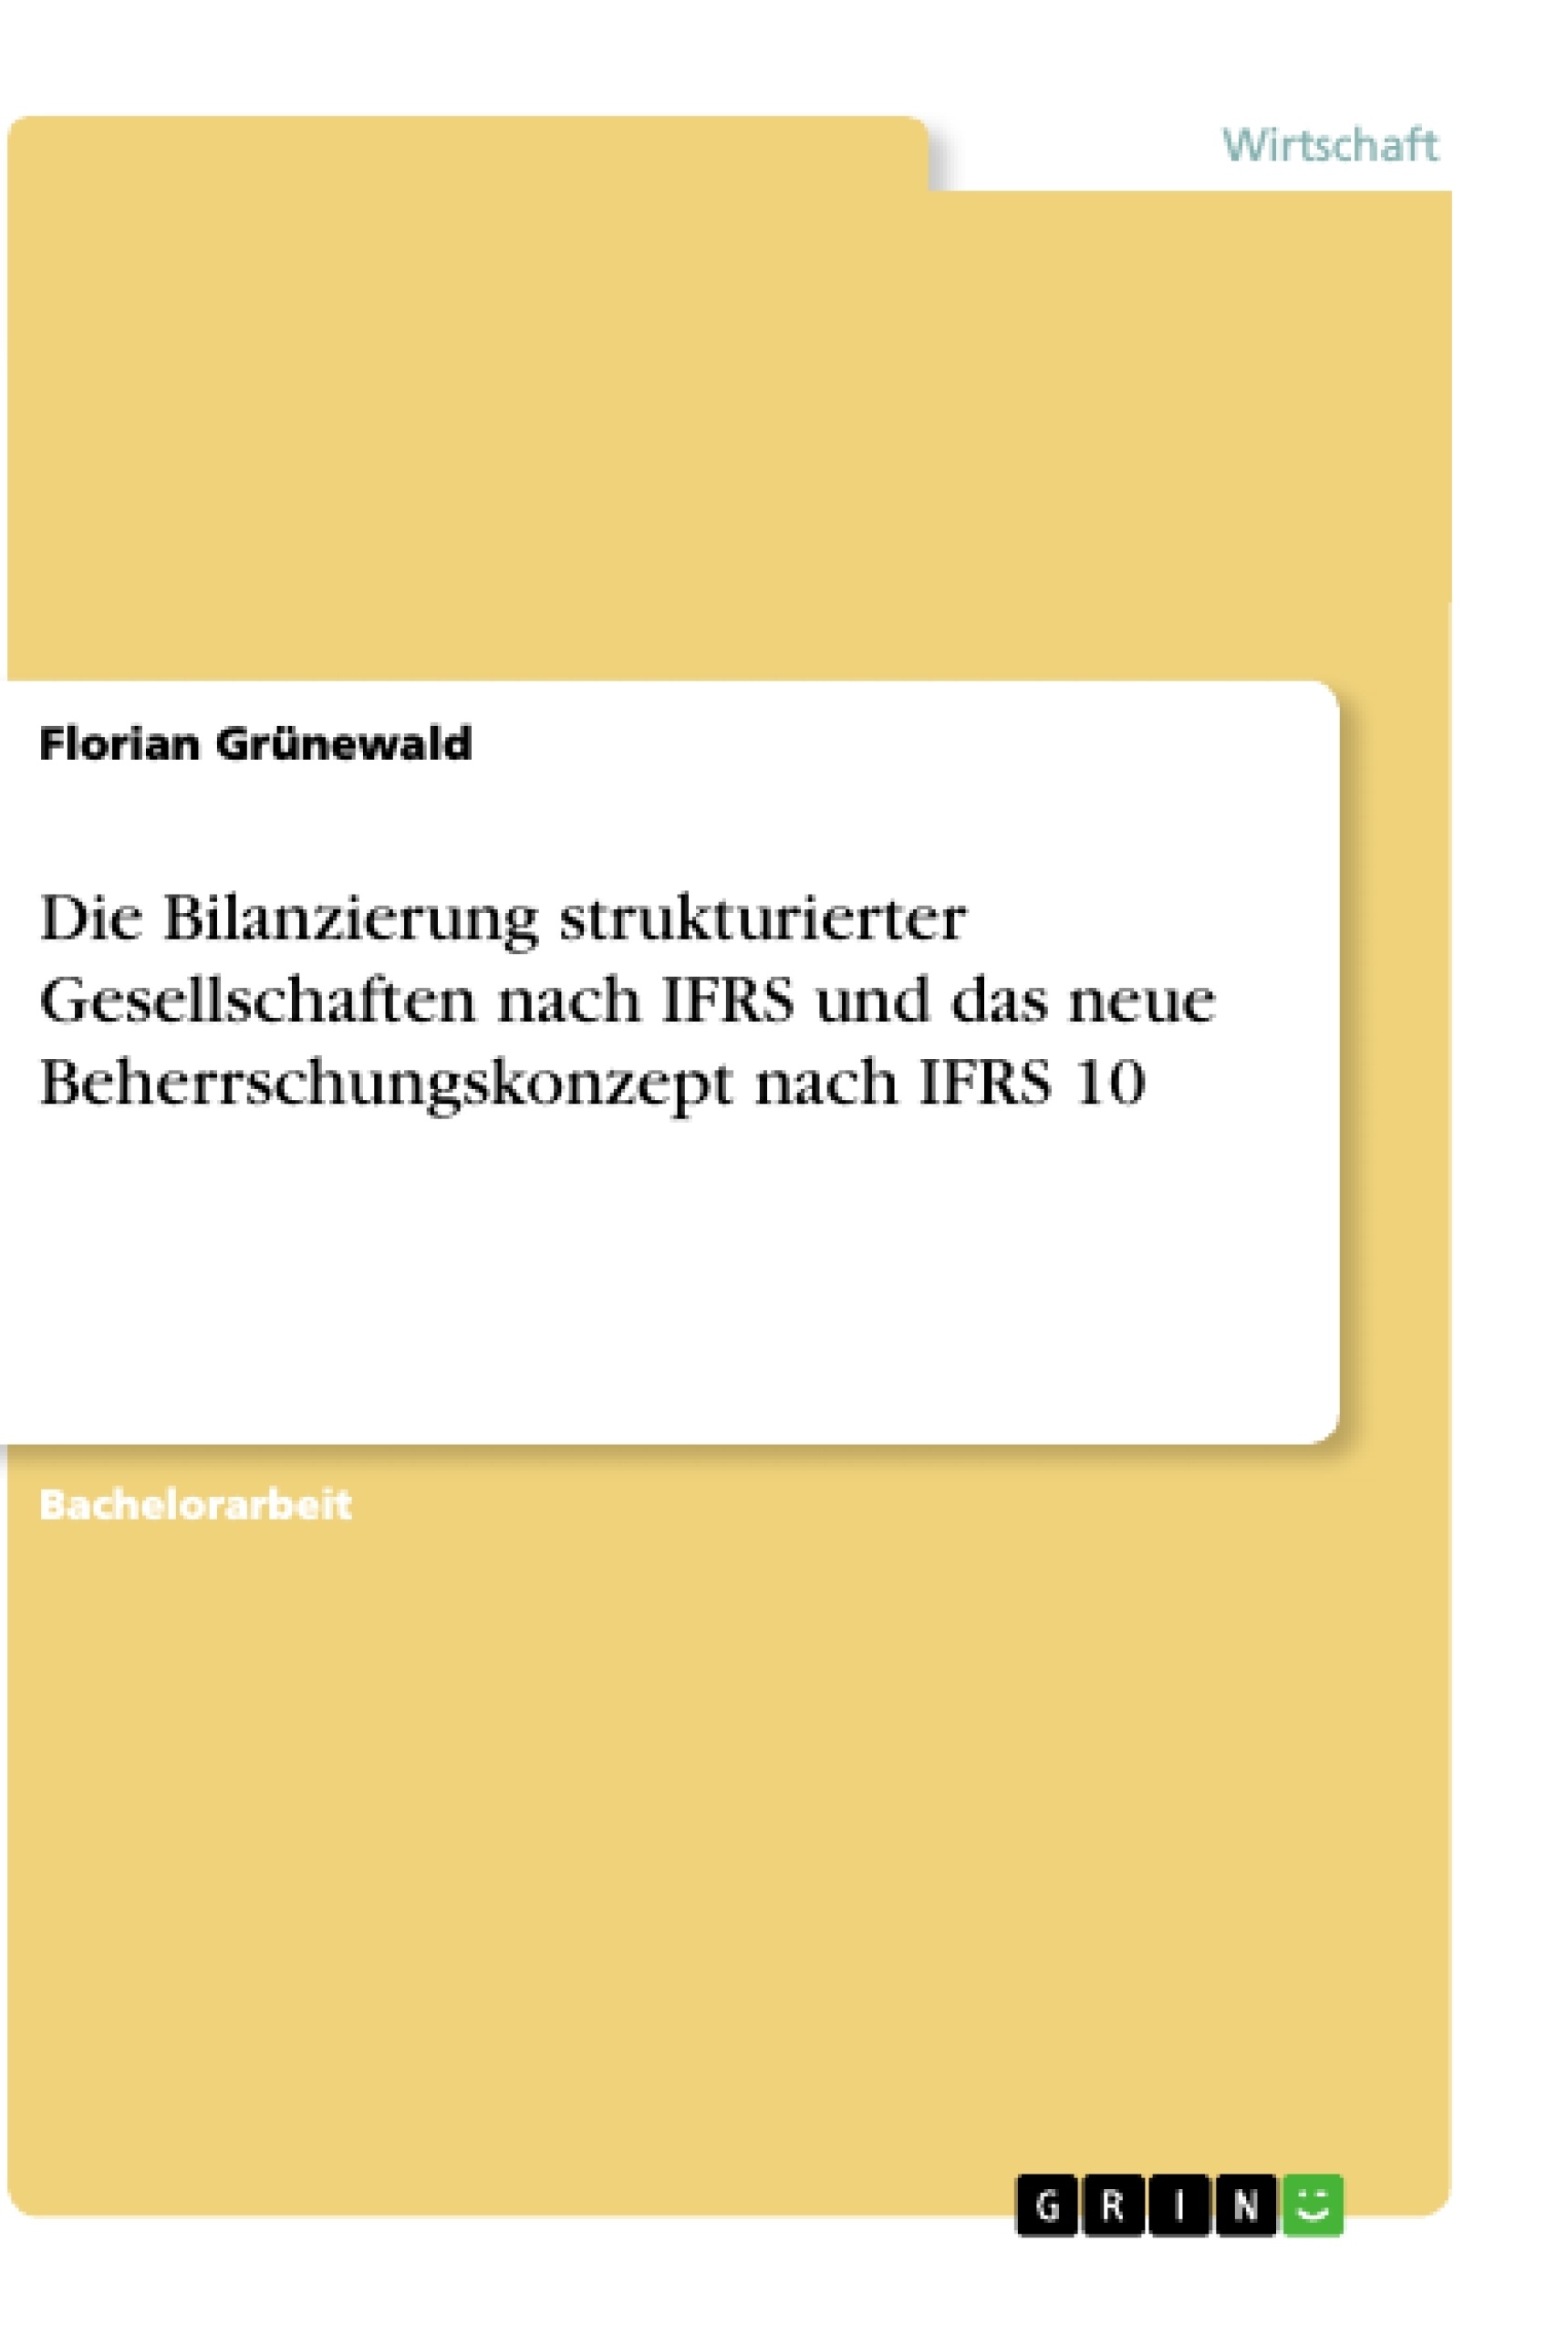 Título: Die Bilanzierung strukturierter Gesellschaften nach IFRS und das neue Beherrschungskonzept nach IFRS 10